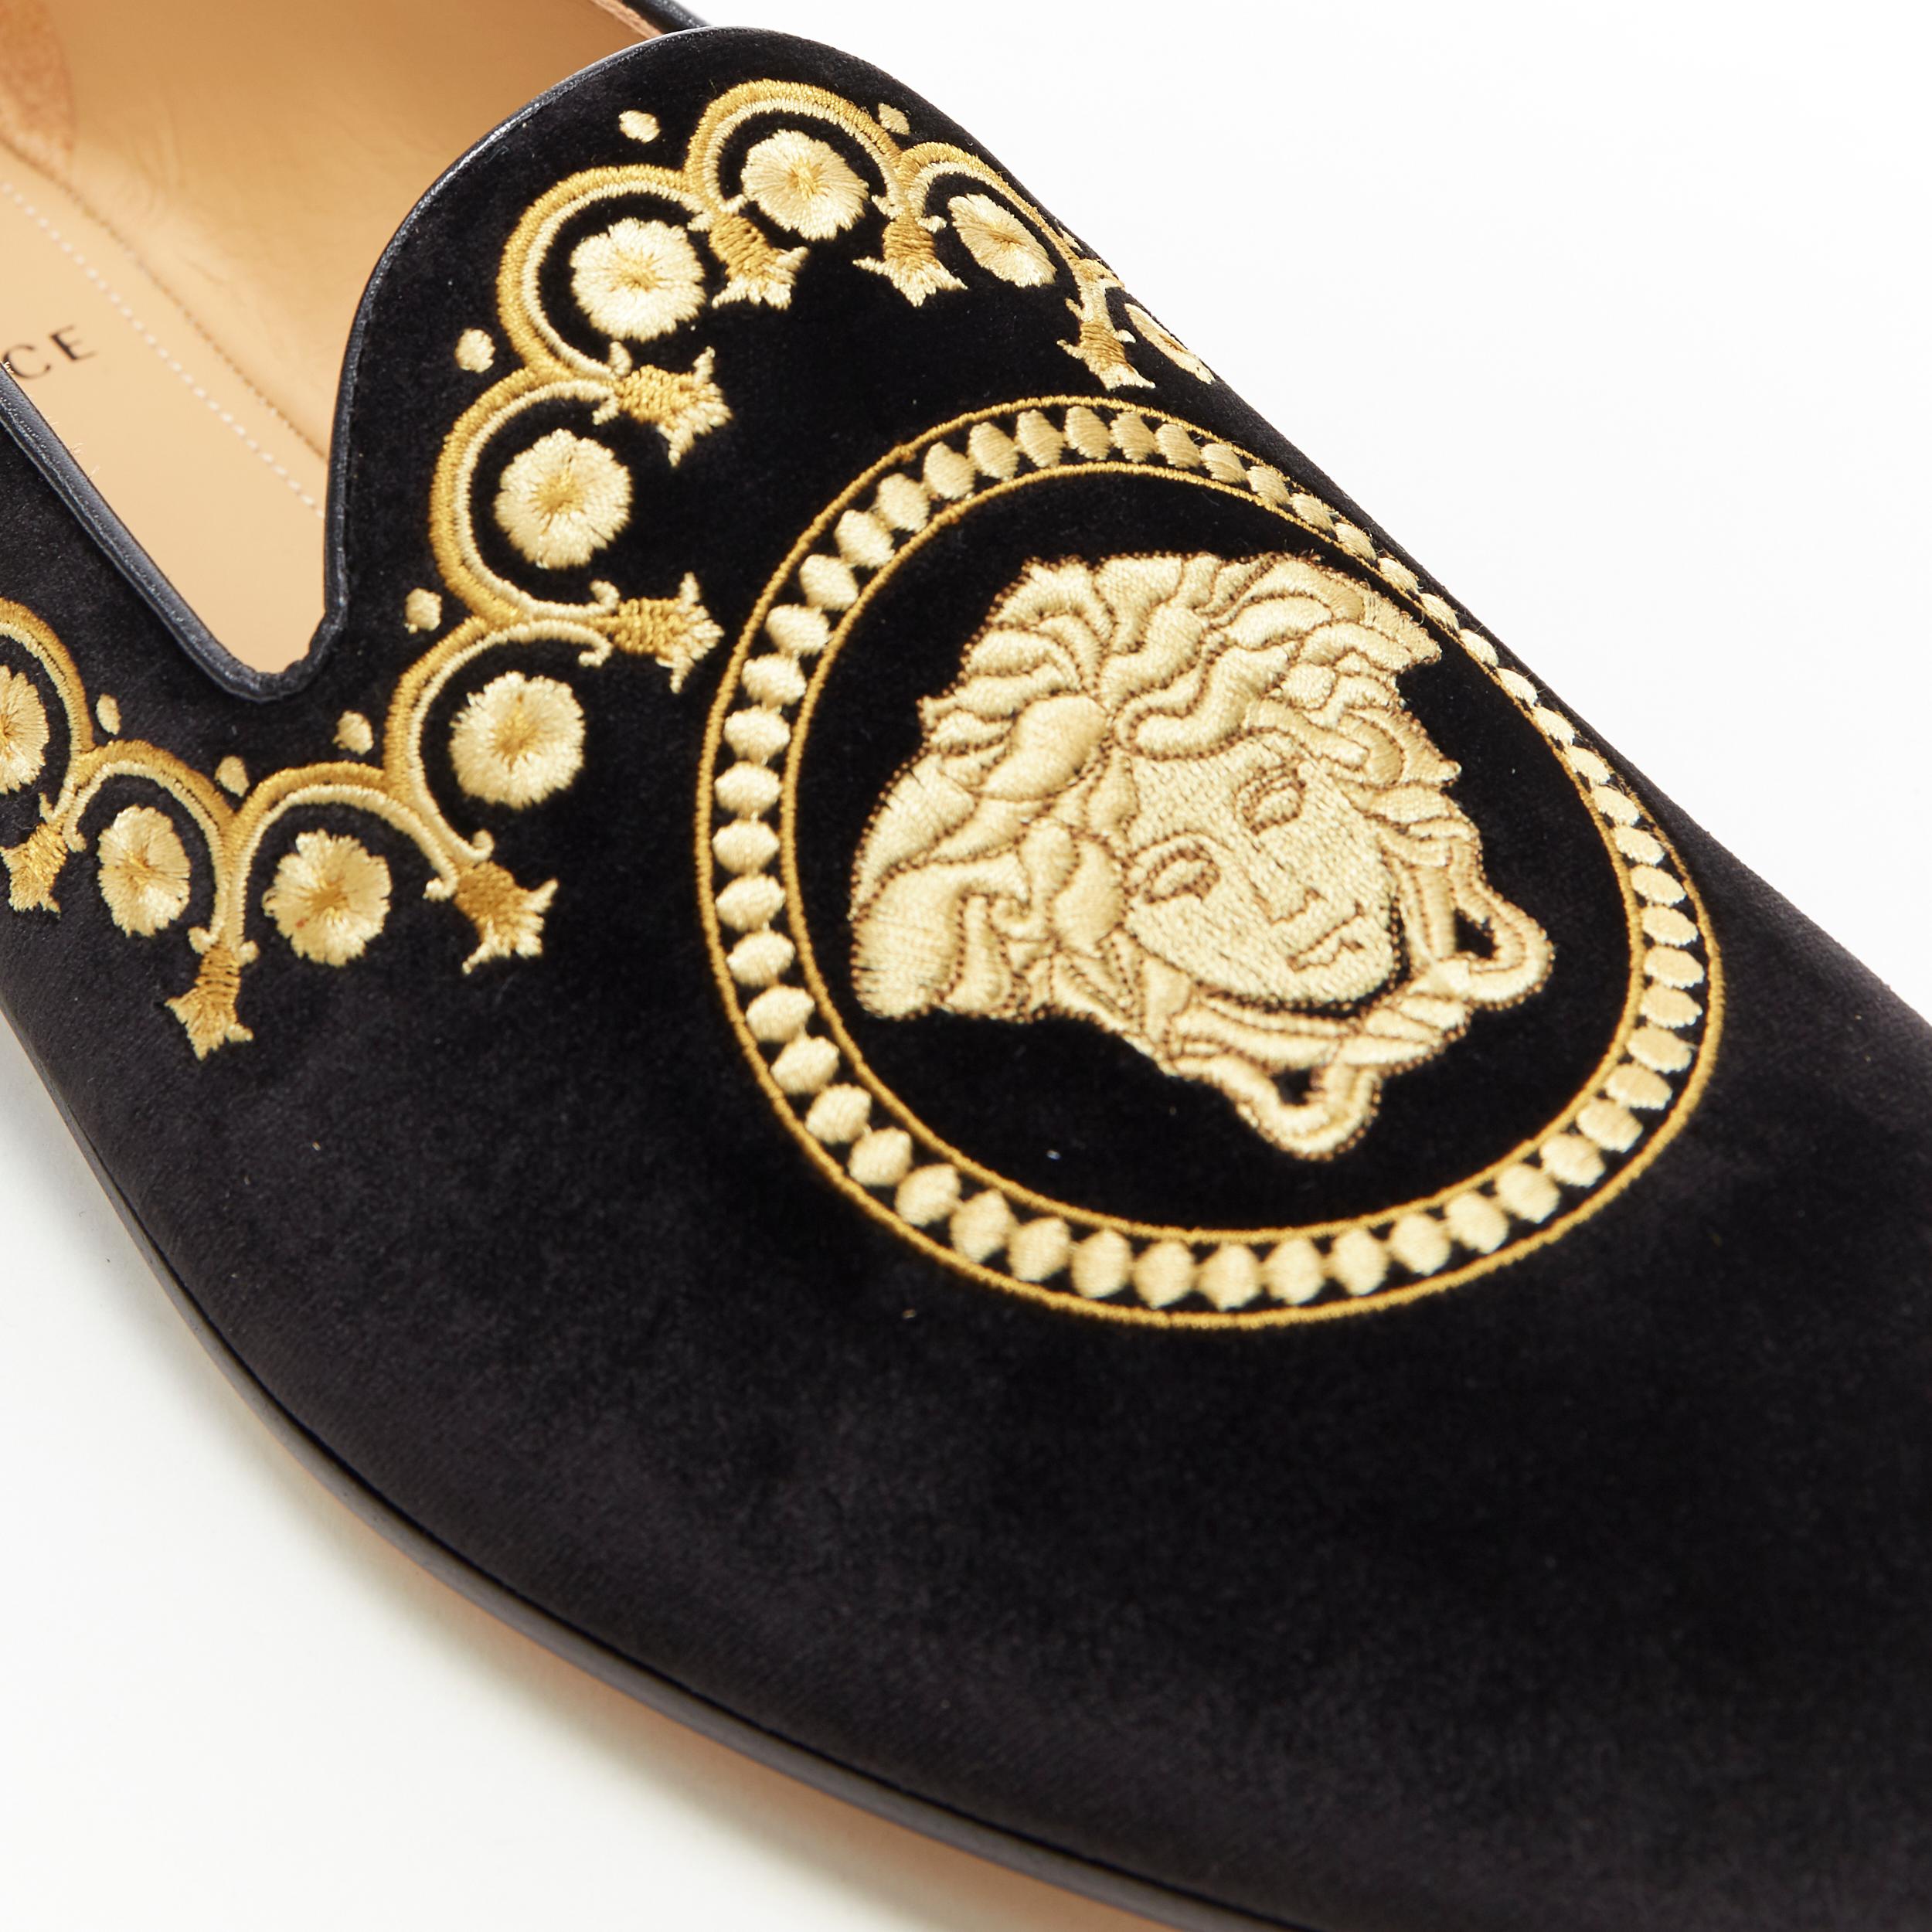 Men's new VERSACE black vekvet Medusa baroque embroidery smoking slipper loafer EU42